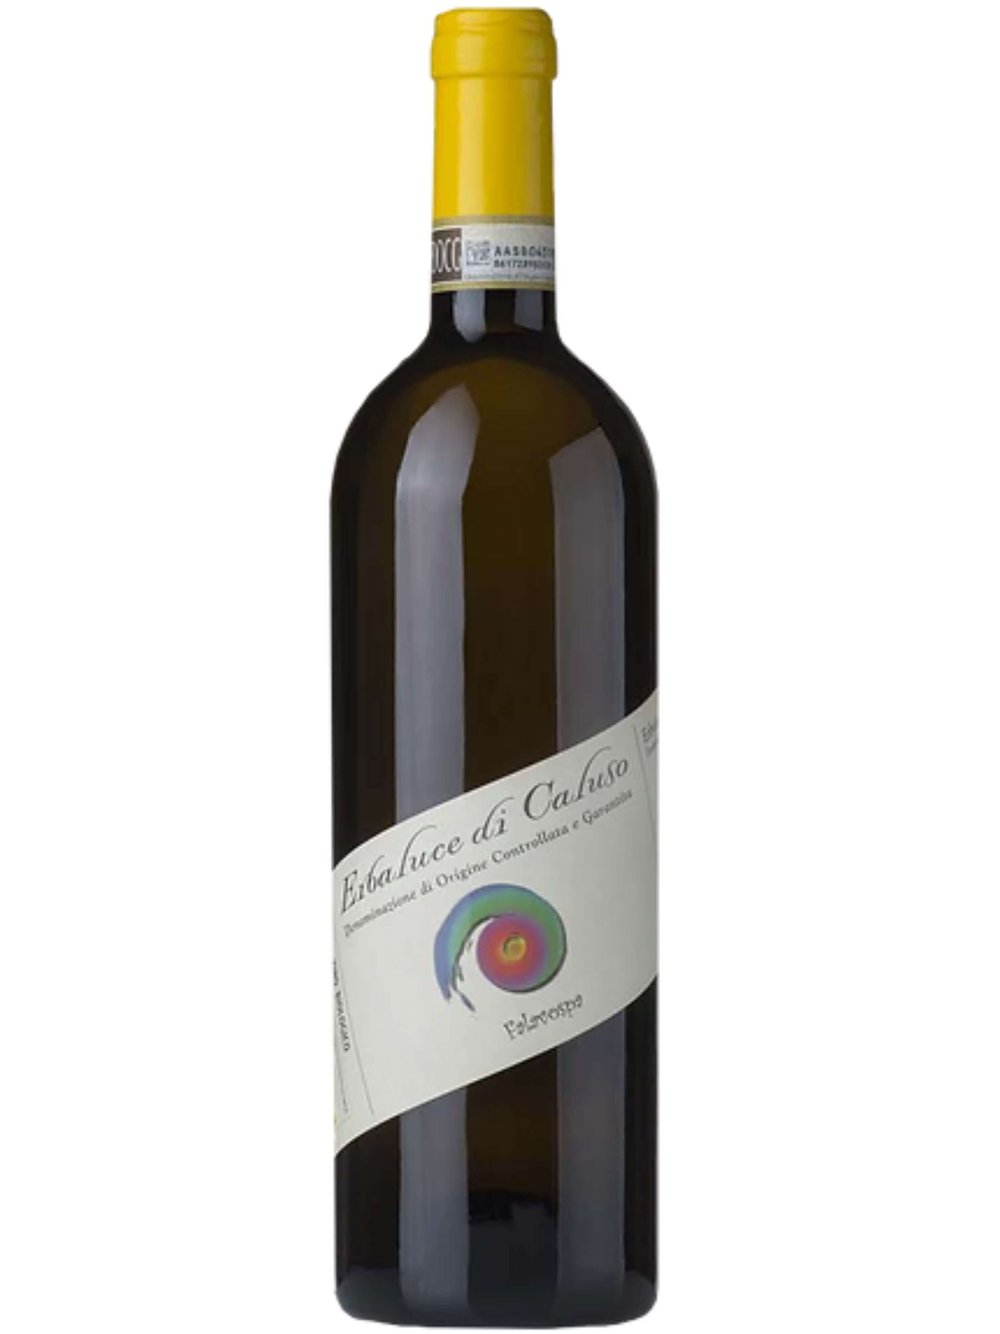 Antonella Piatti Falavospa Erbaluce Organic White Wine